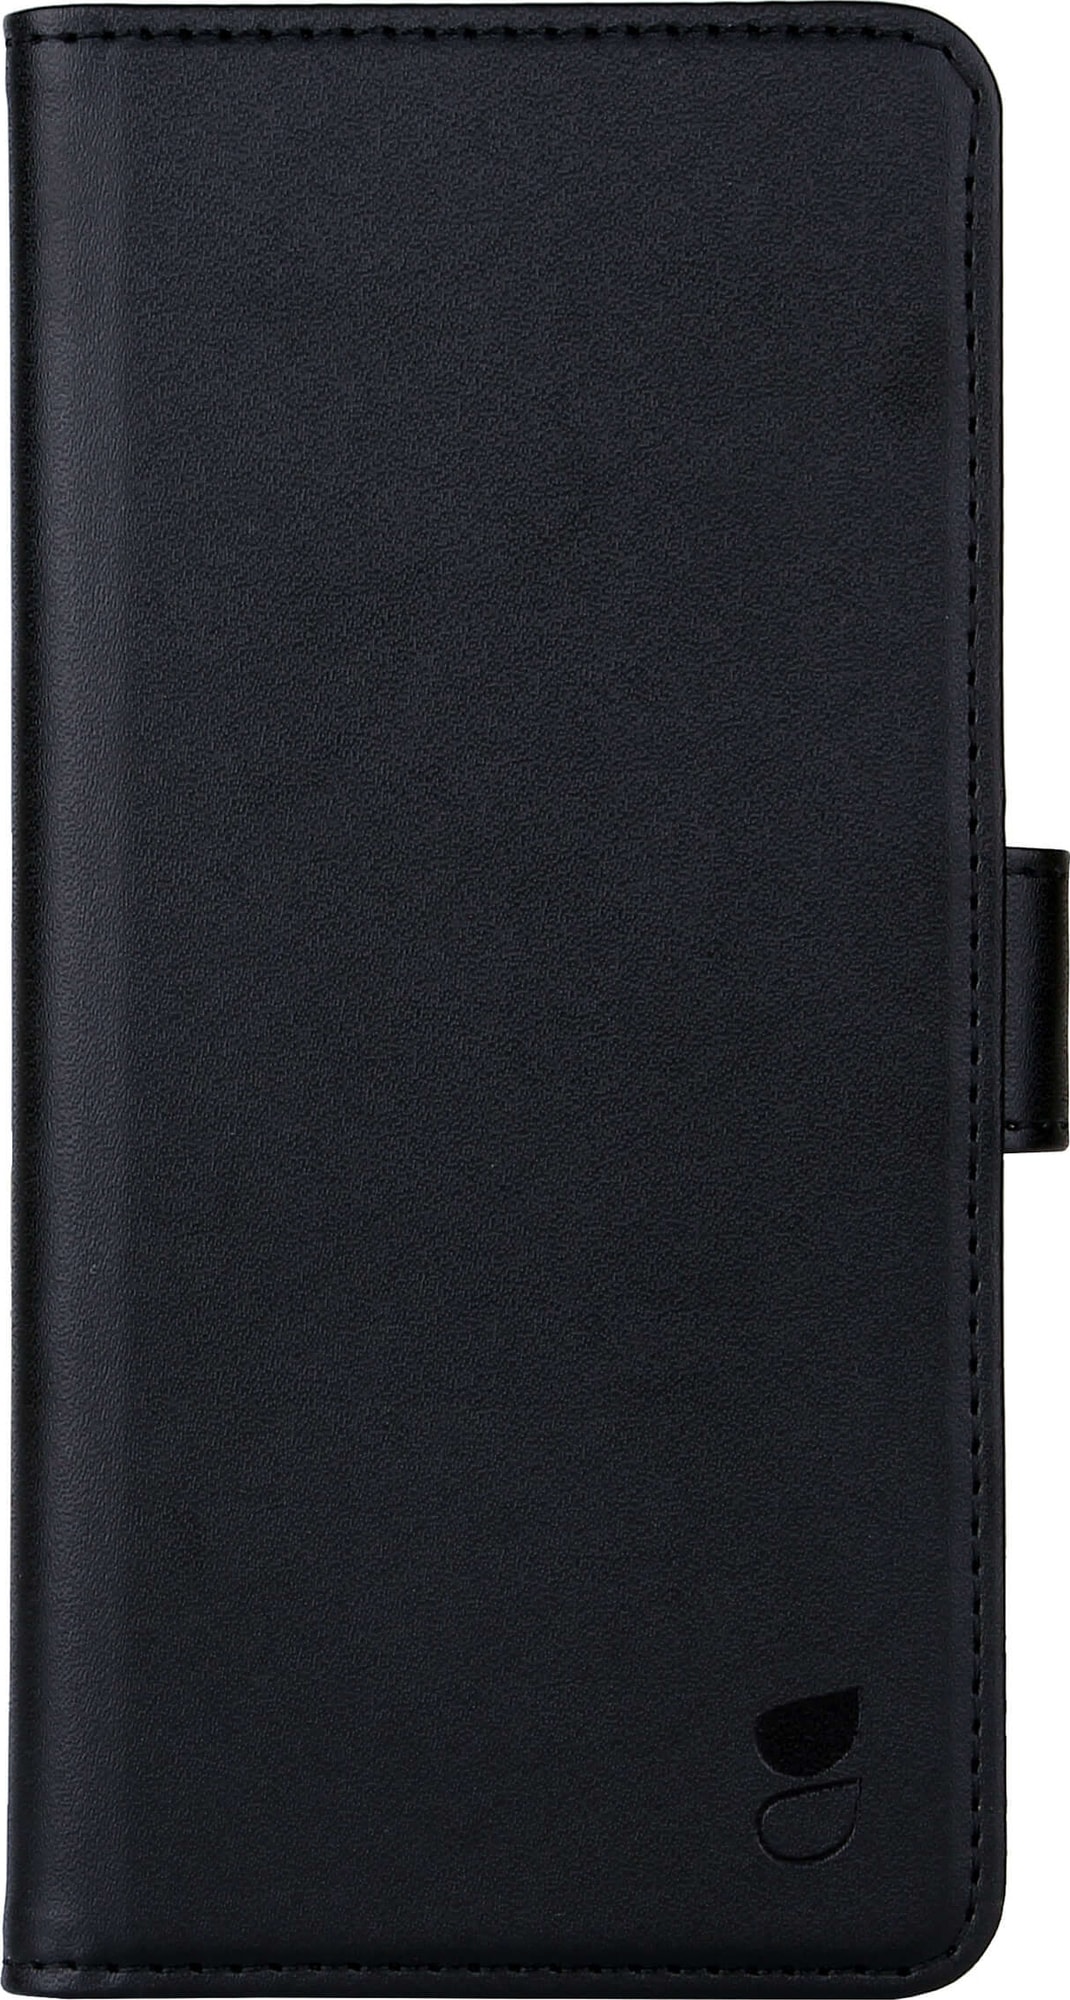 Gear Sony Xperia 5 lommebokdeksel (sort) - Deksler og etui til mobiltelefon  - Elkjøp